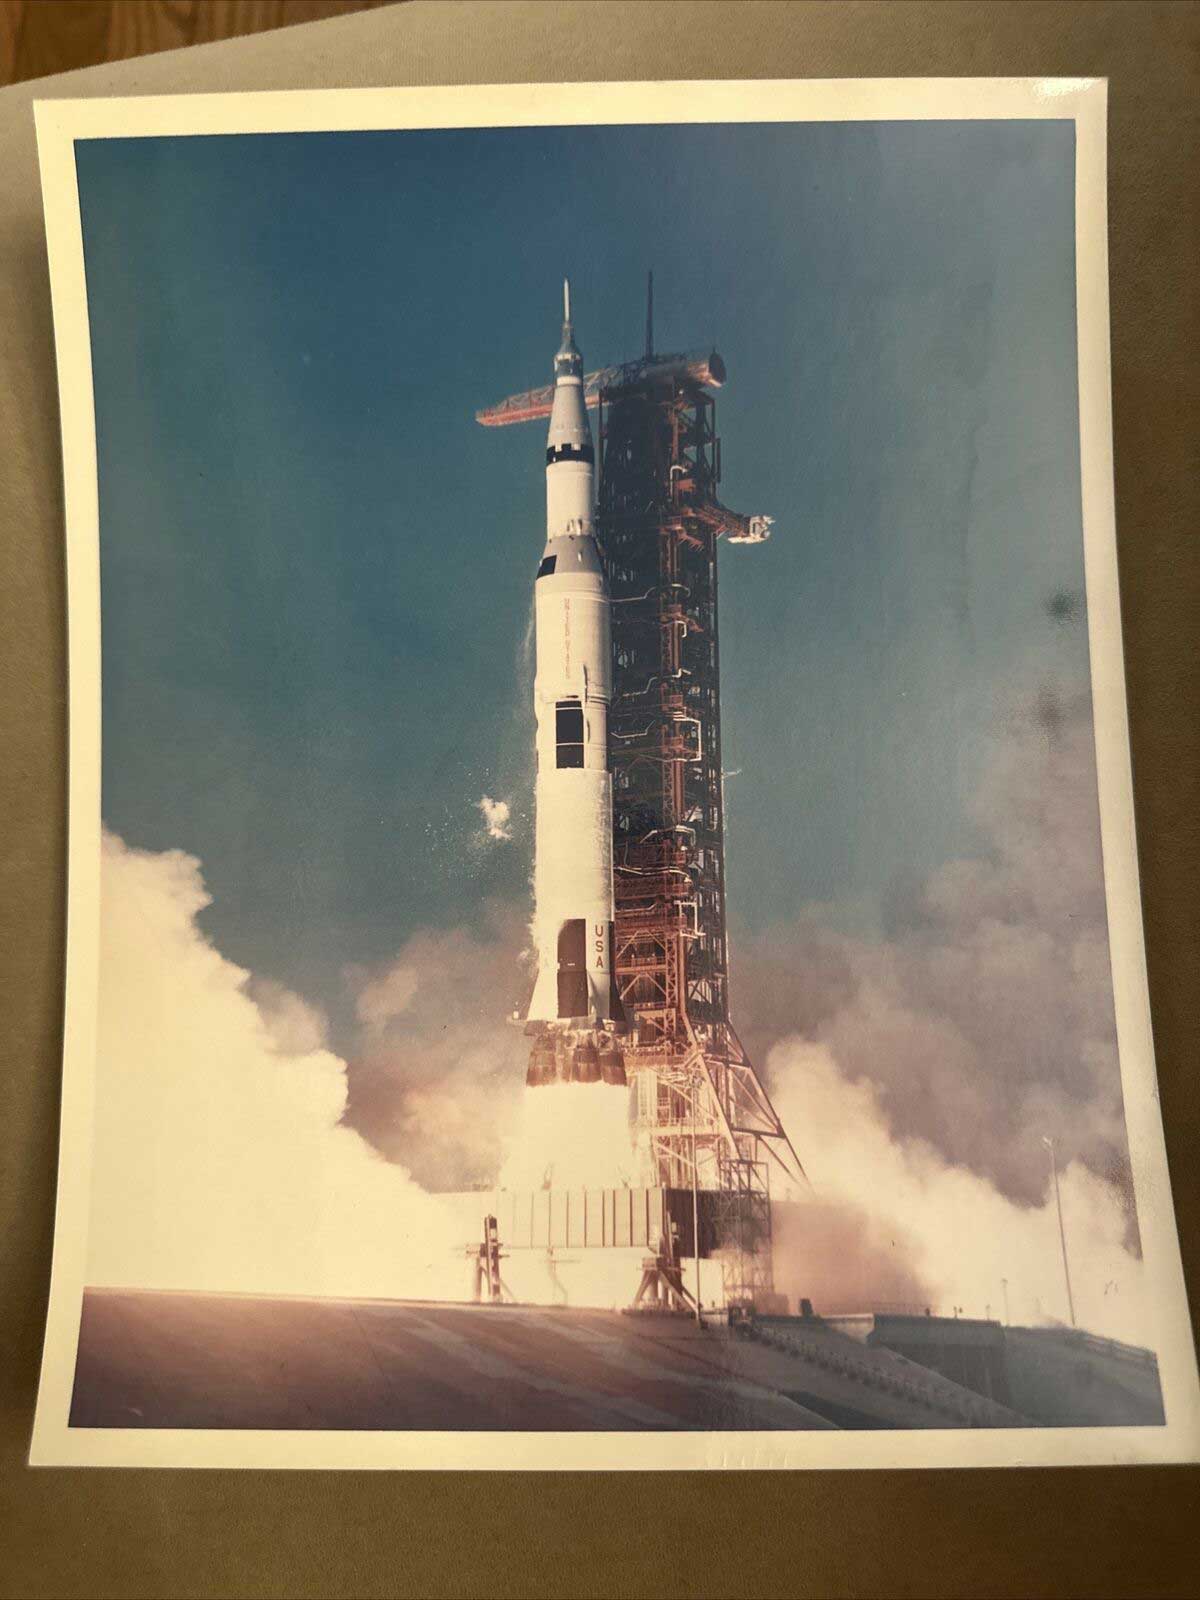 The Apollo 13 shuttle in 1970 liftoff